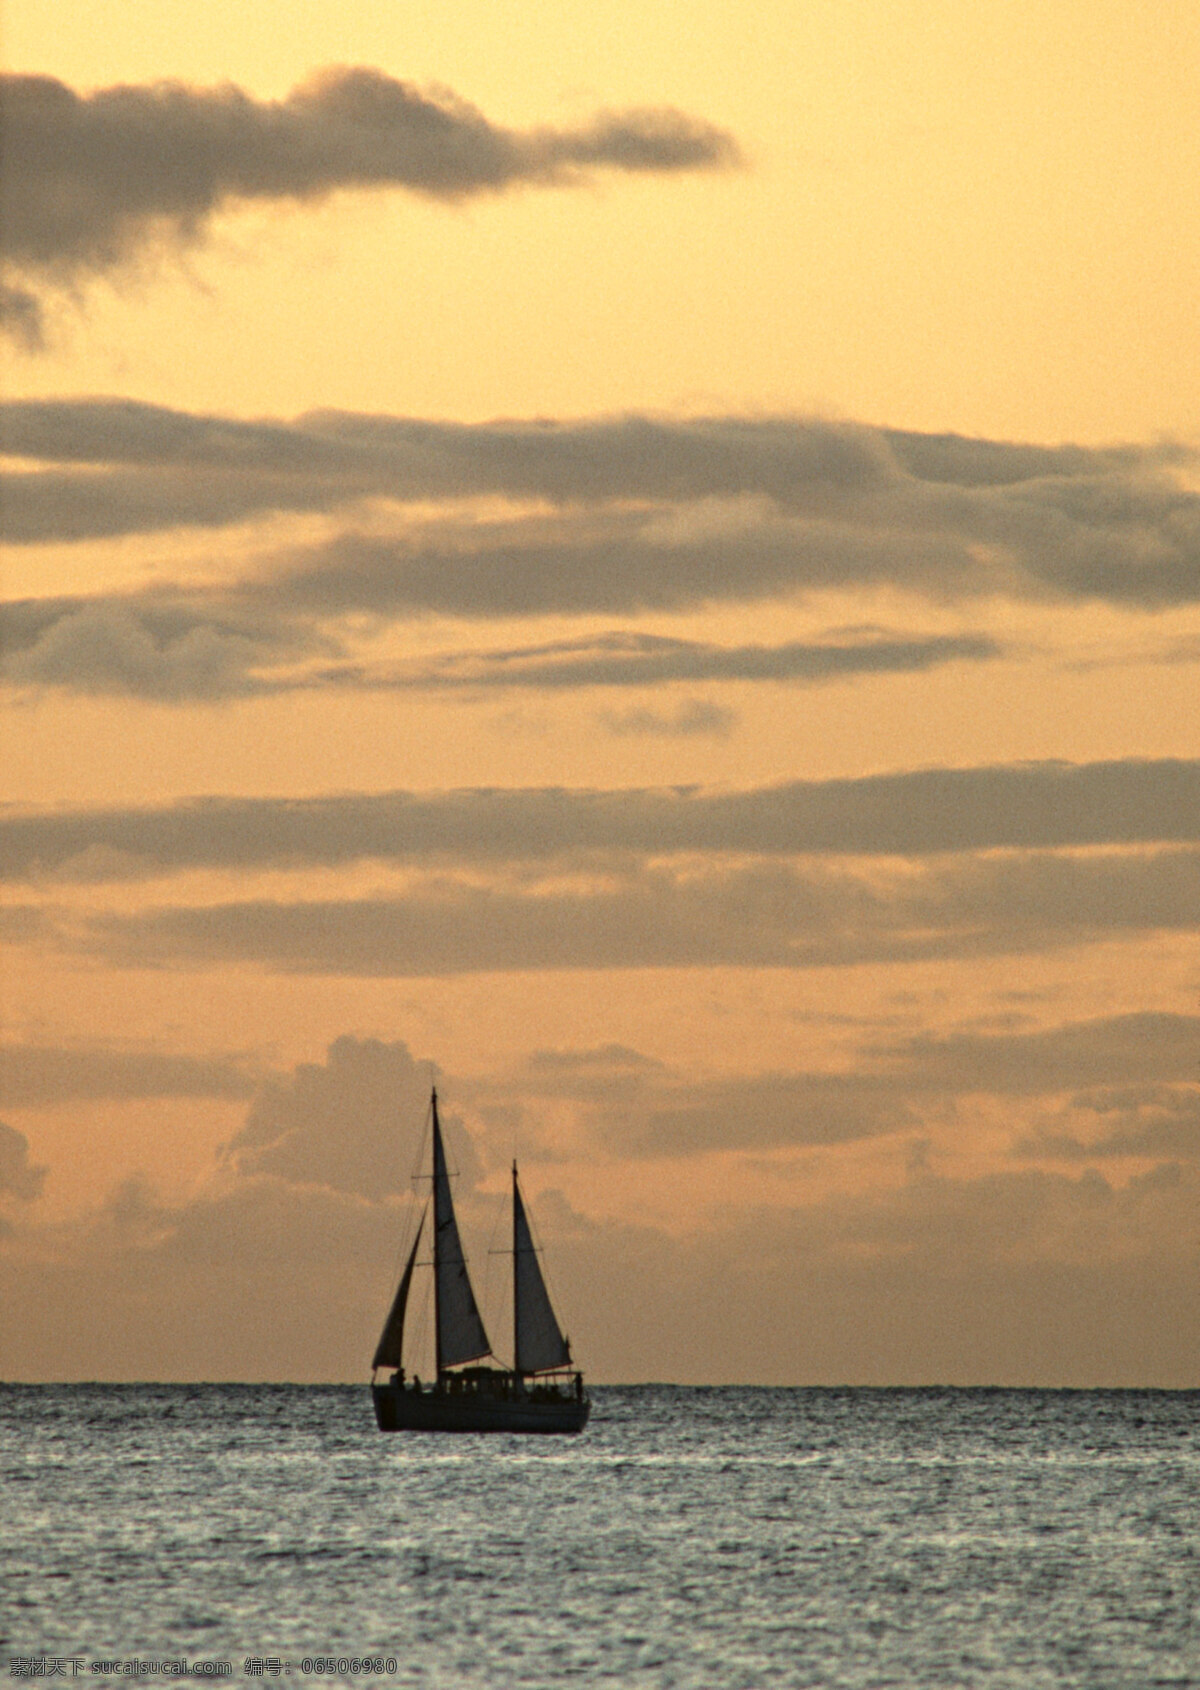 海上 帆船 旅游 风景区 夏威夷 夏威夷风光 悠闲 假日 海面 黄昏 日落 大海图片 风景图片